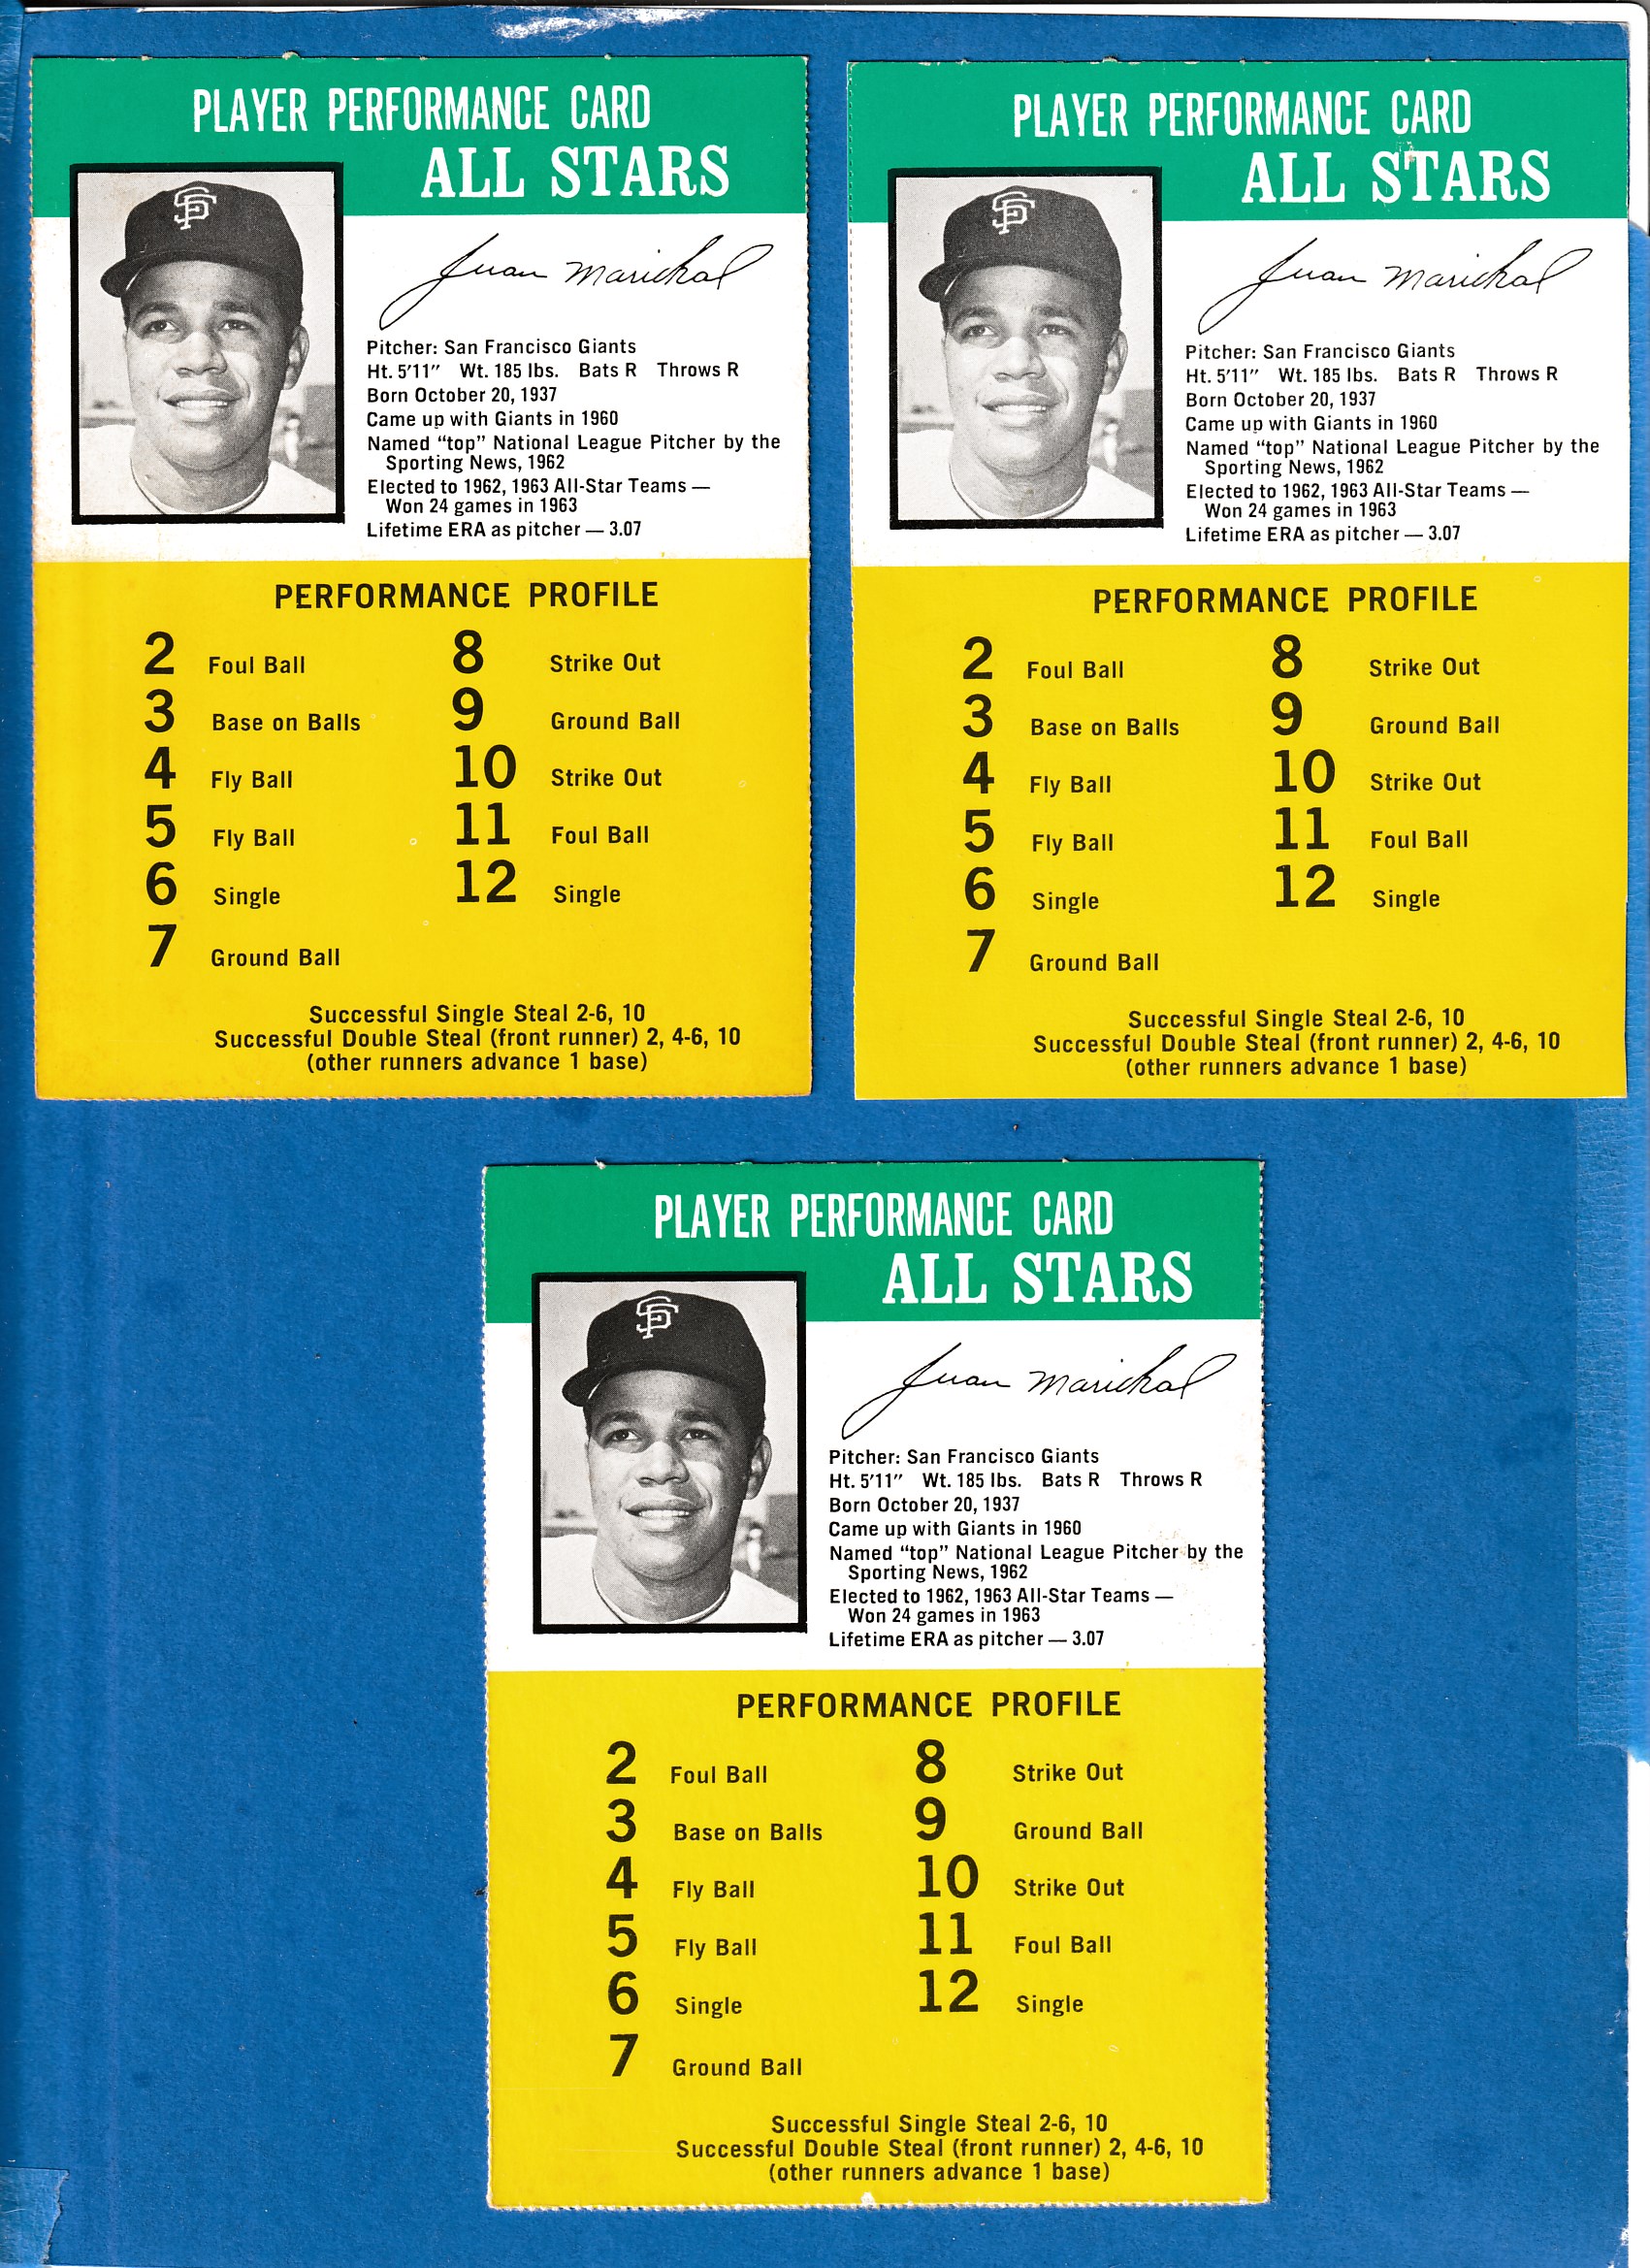 1964 Challenge the Yankees #34 Juan Marichal [3.07] (Giants)